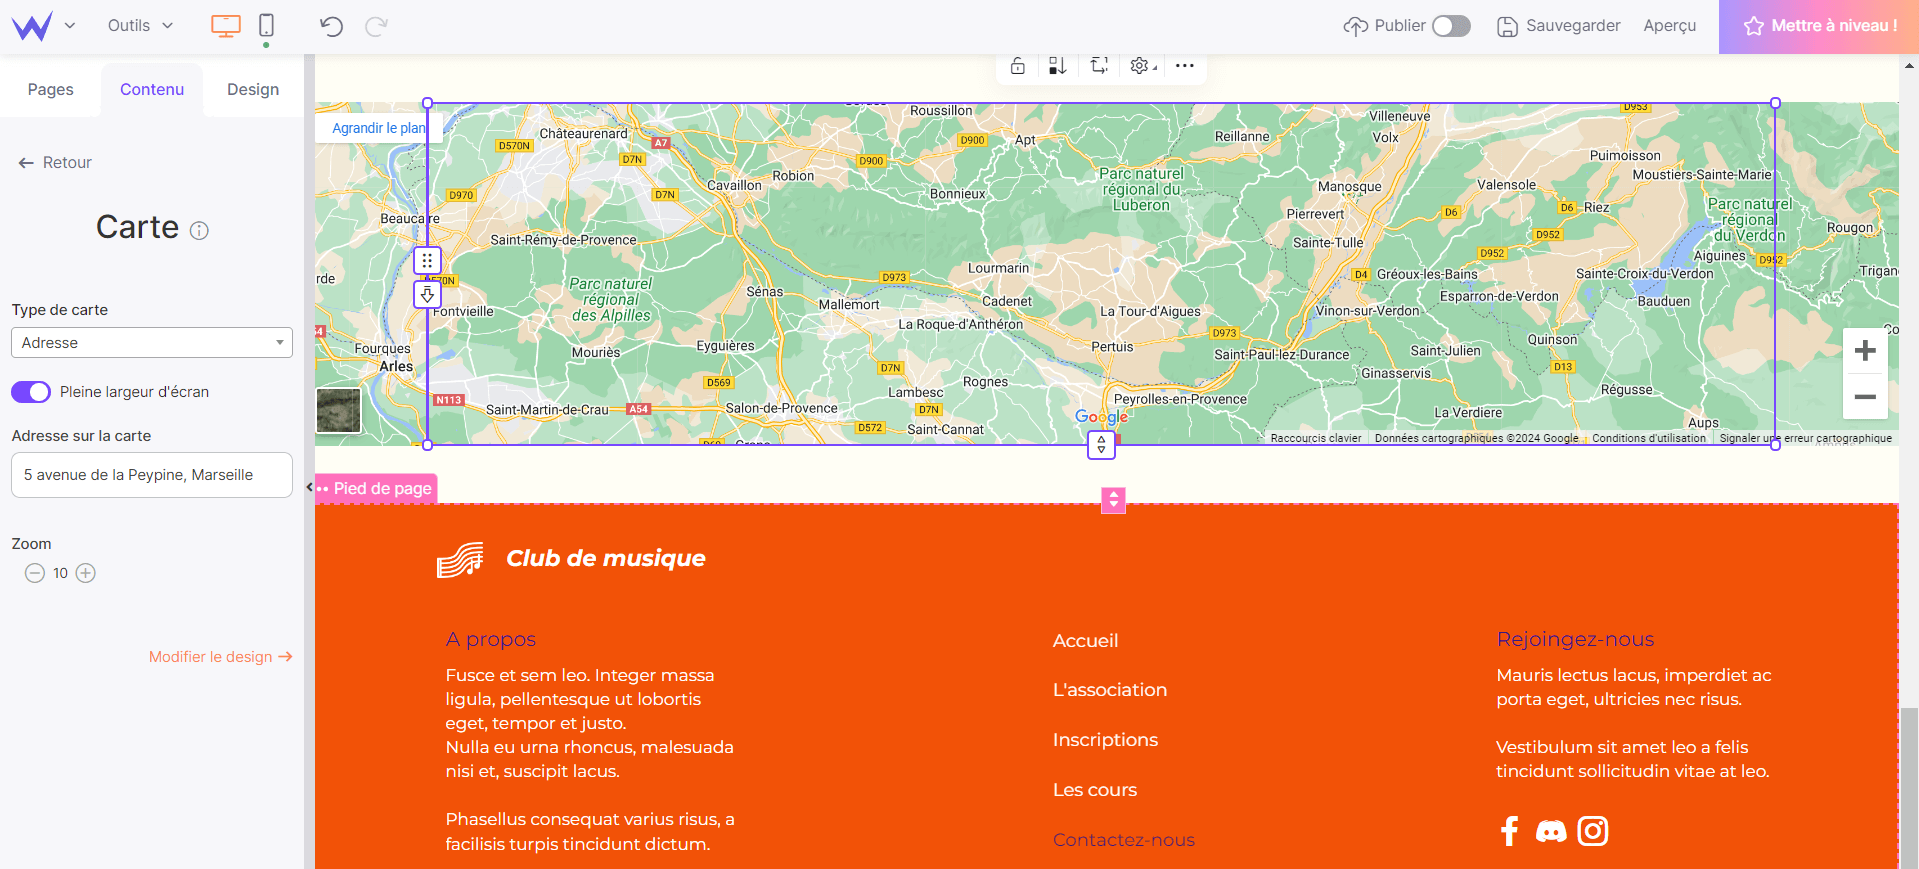 web design : section visuelle avec carte de localisation